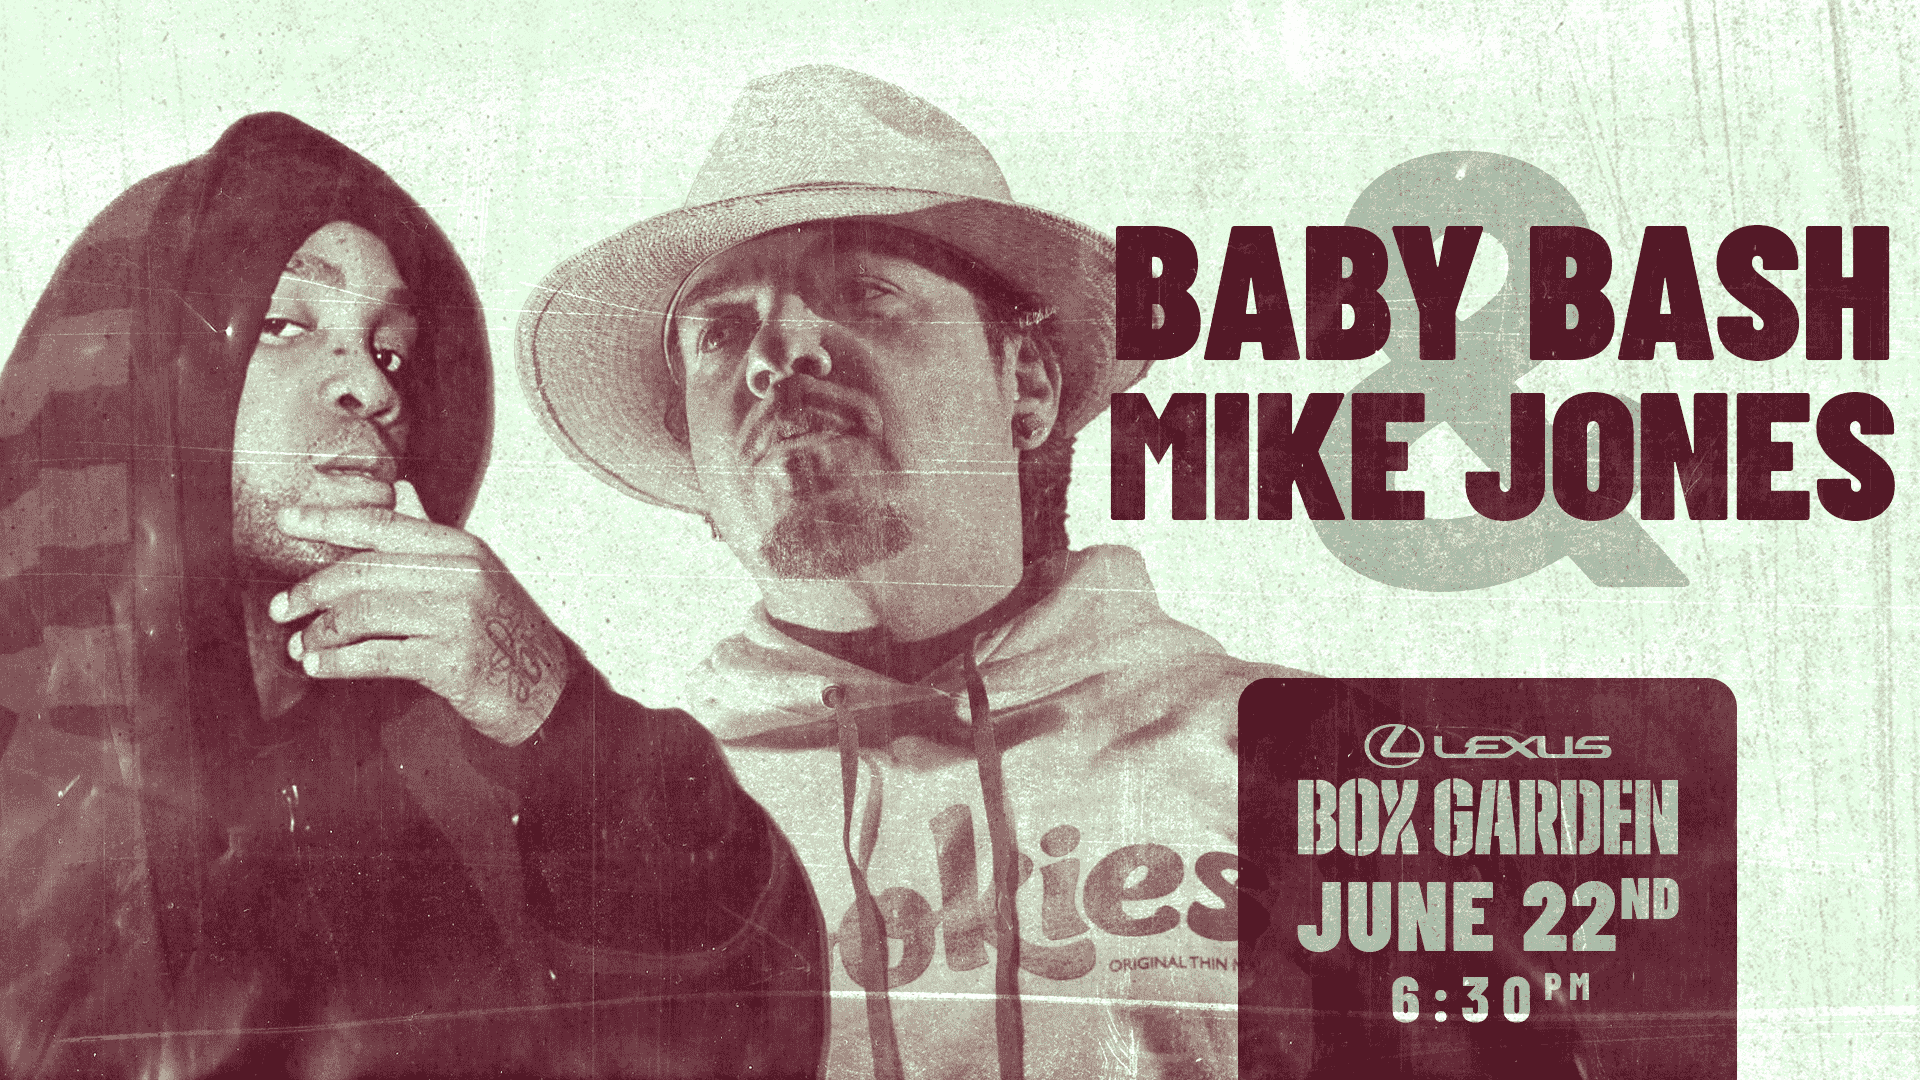 Mike Jones + Baby Bash 